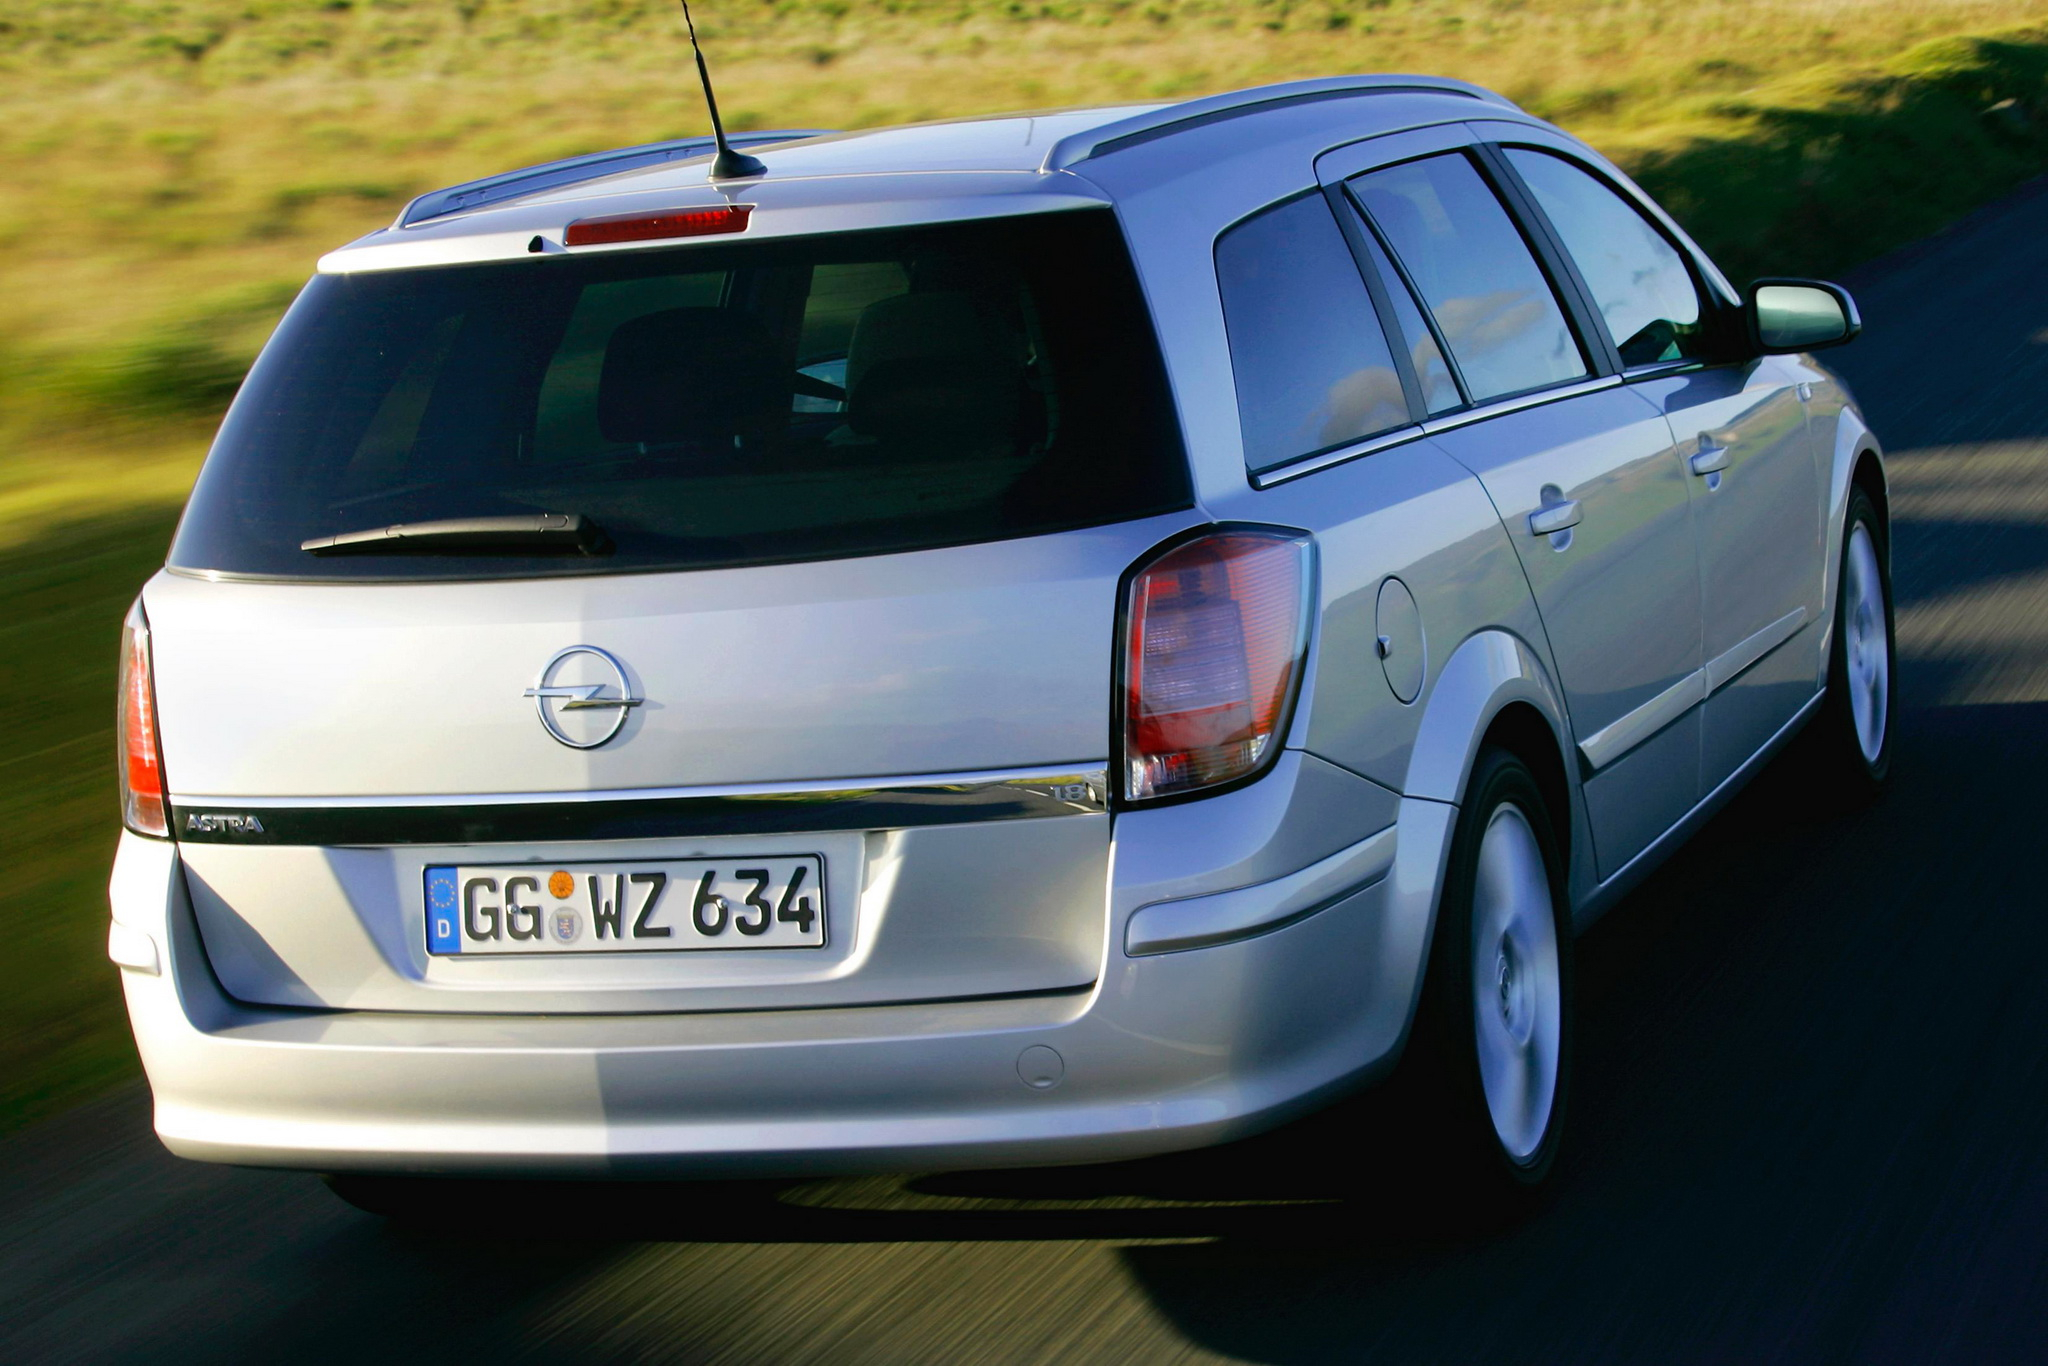 Опель универсал 1.4. Opel Astra Caravan 2007. Opel Astra 2004 универсал. Opel Astra Caravan универсал. Opel Astra 2004-2007 универсал.